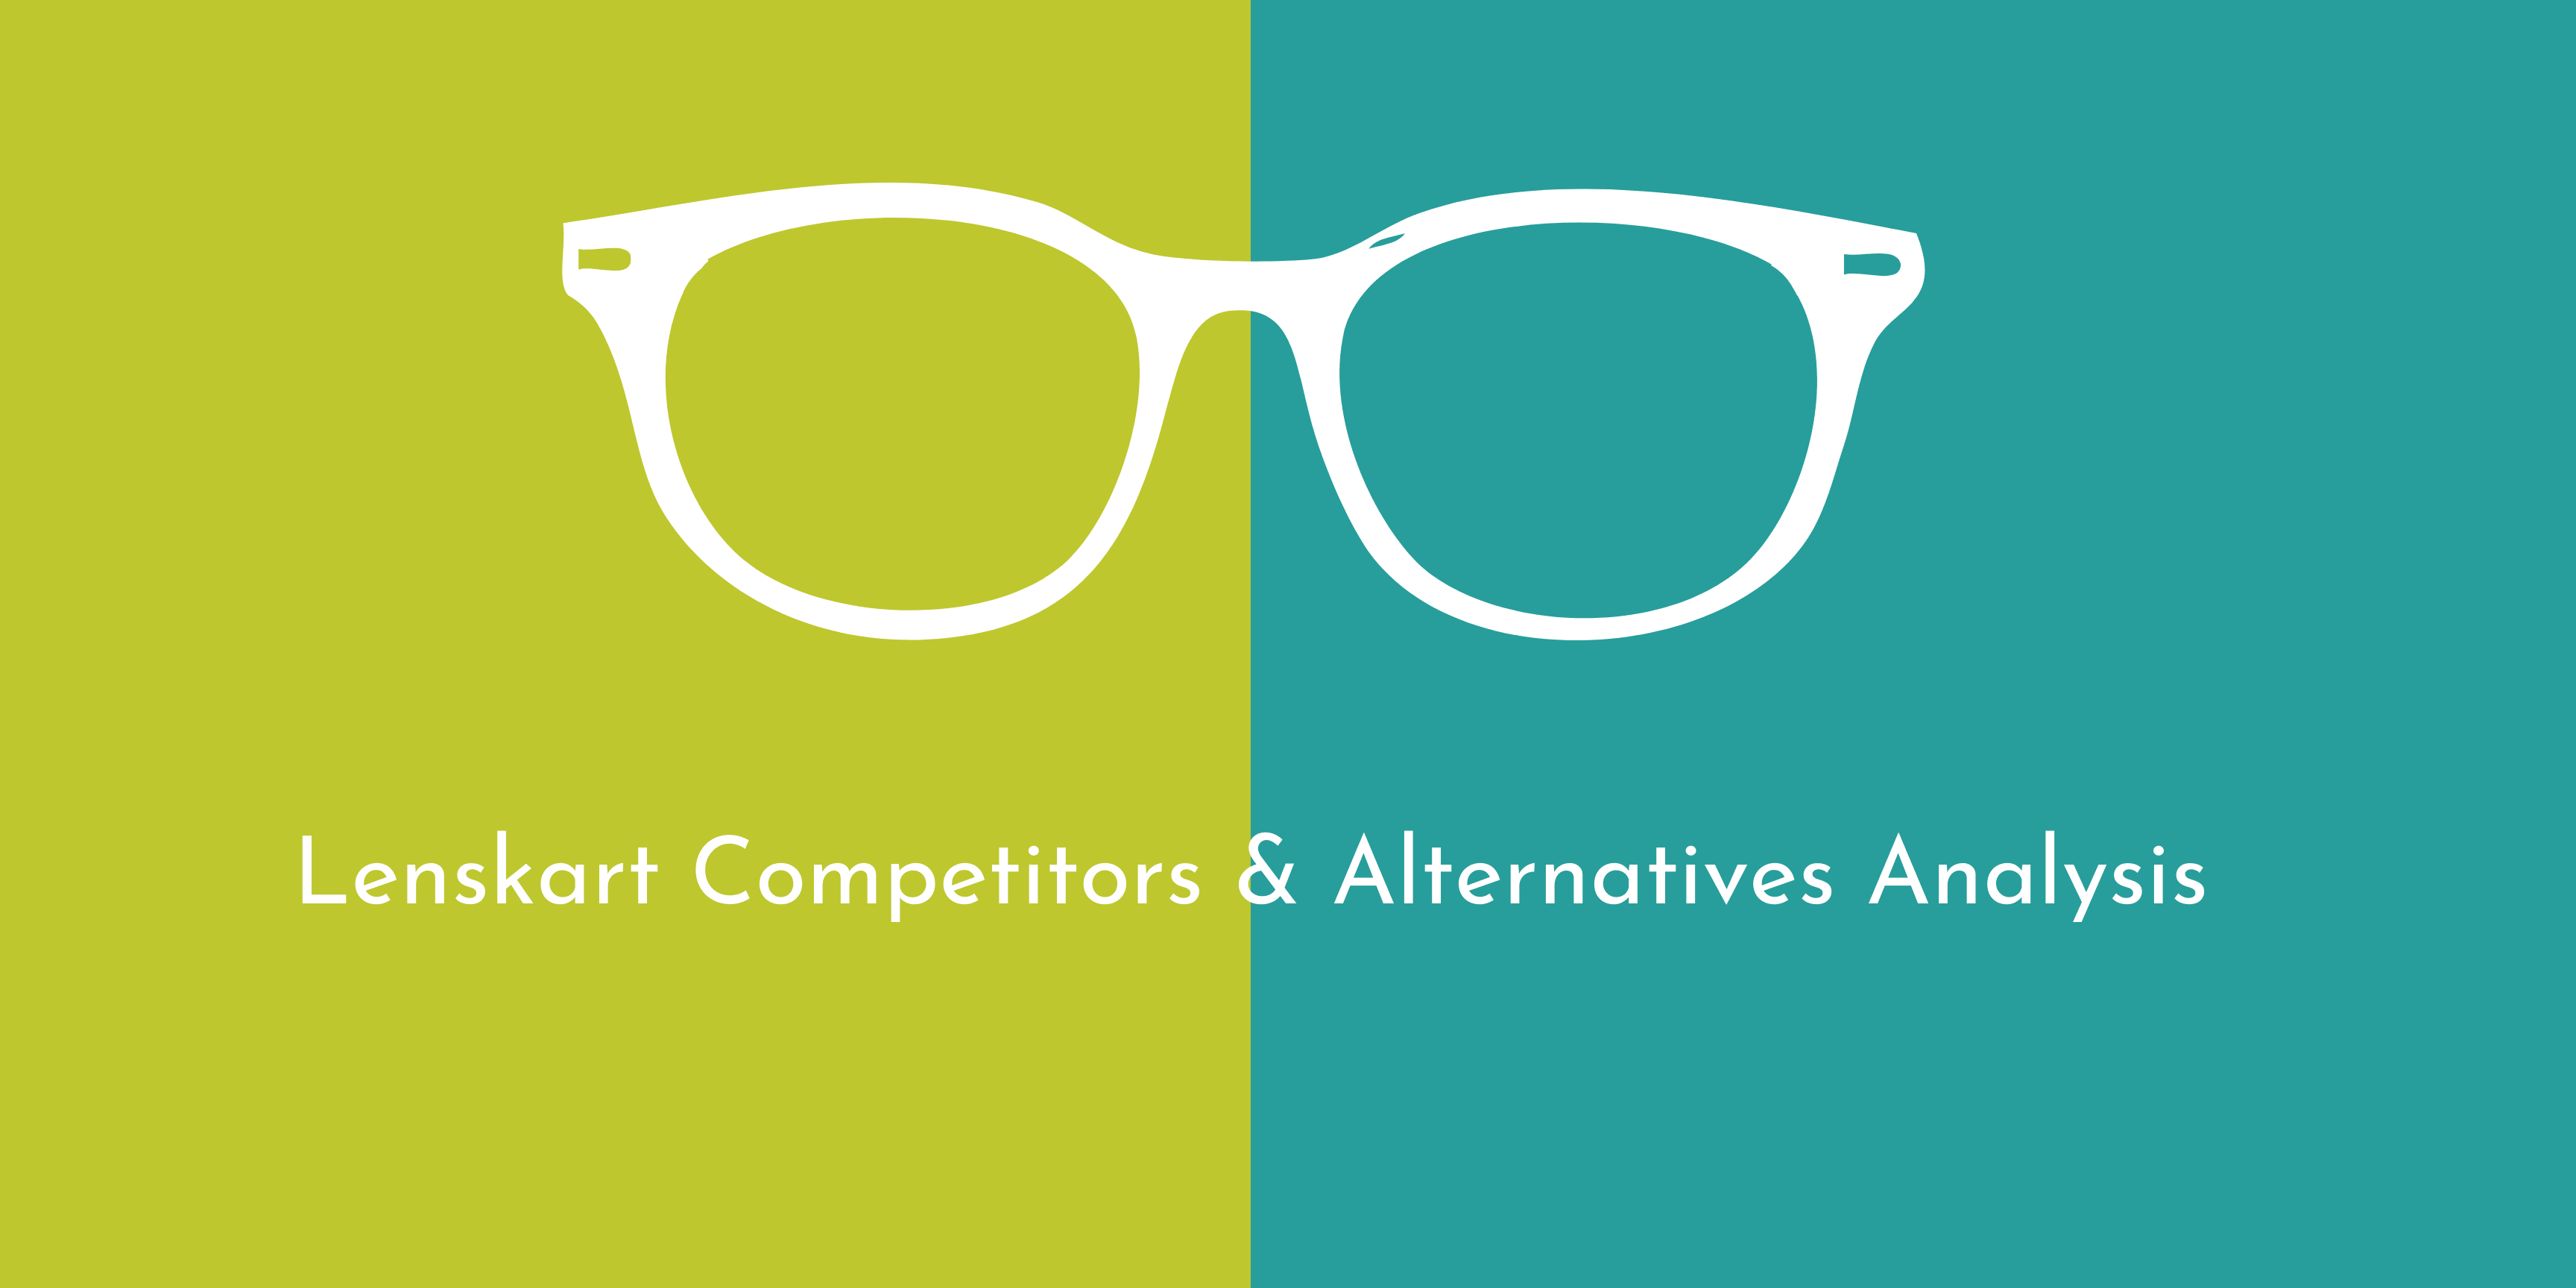 Lenskart Competitors